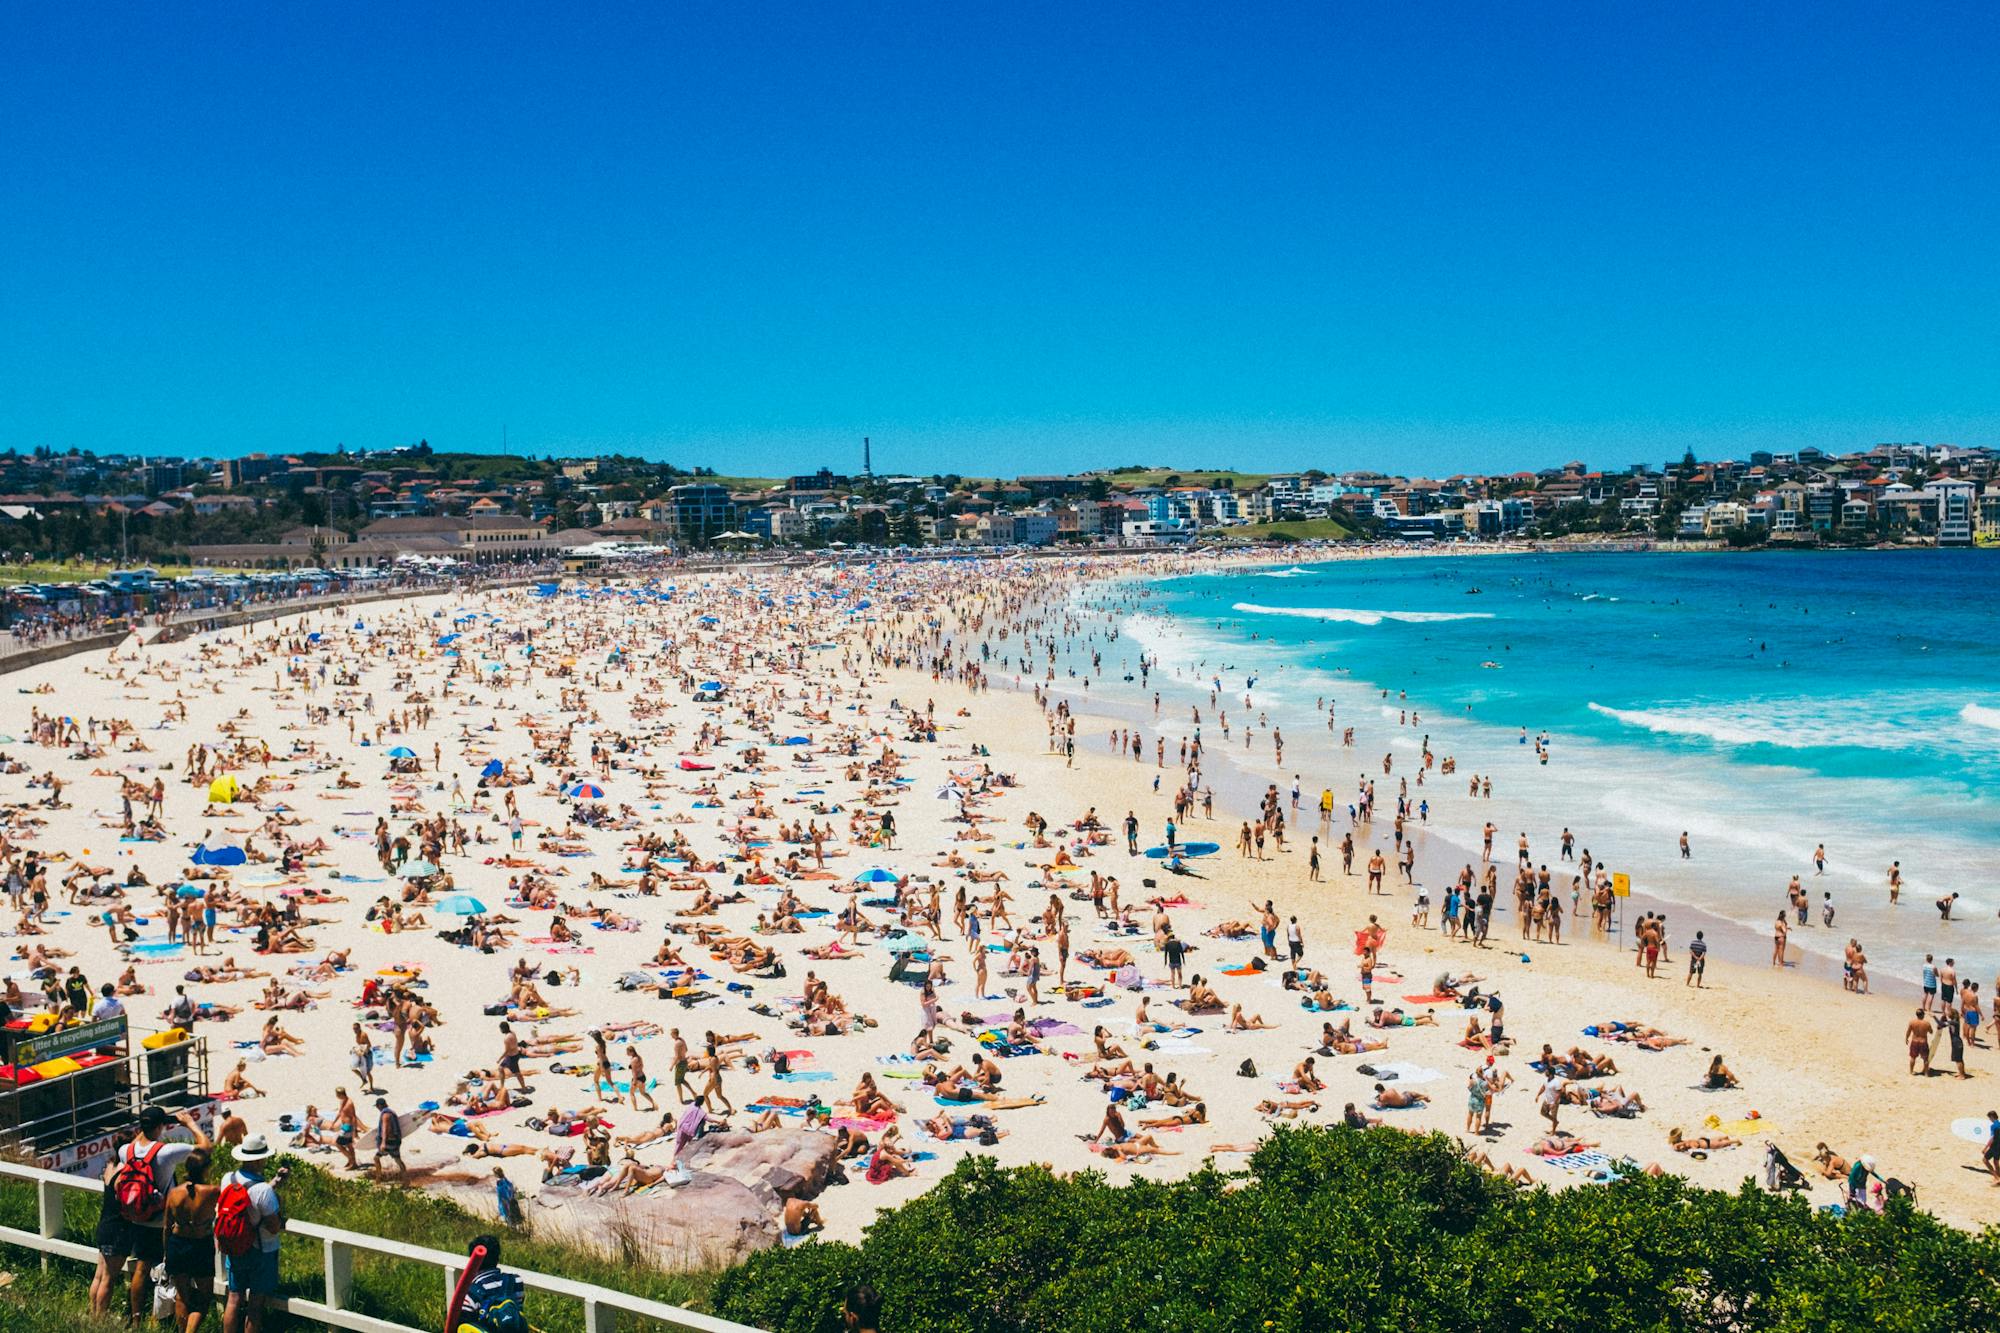 Widok na plażę Bondi z tysiącami ludzi leżących na plaży i kąpiących się w morzu.